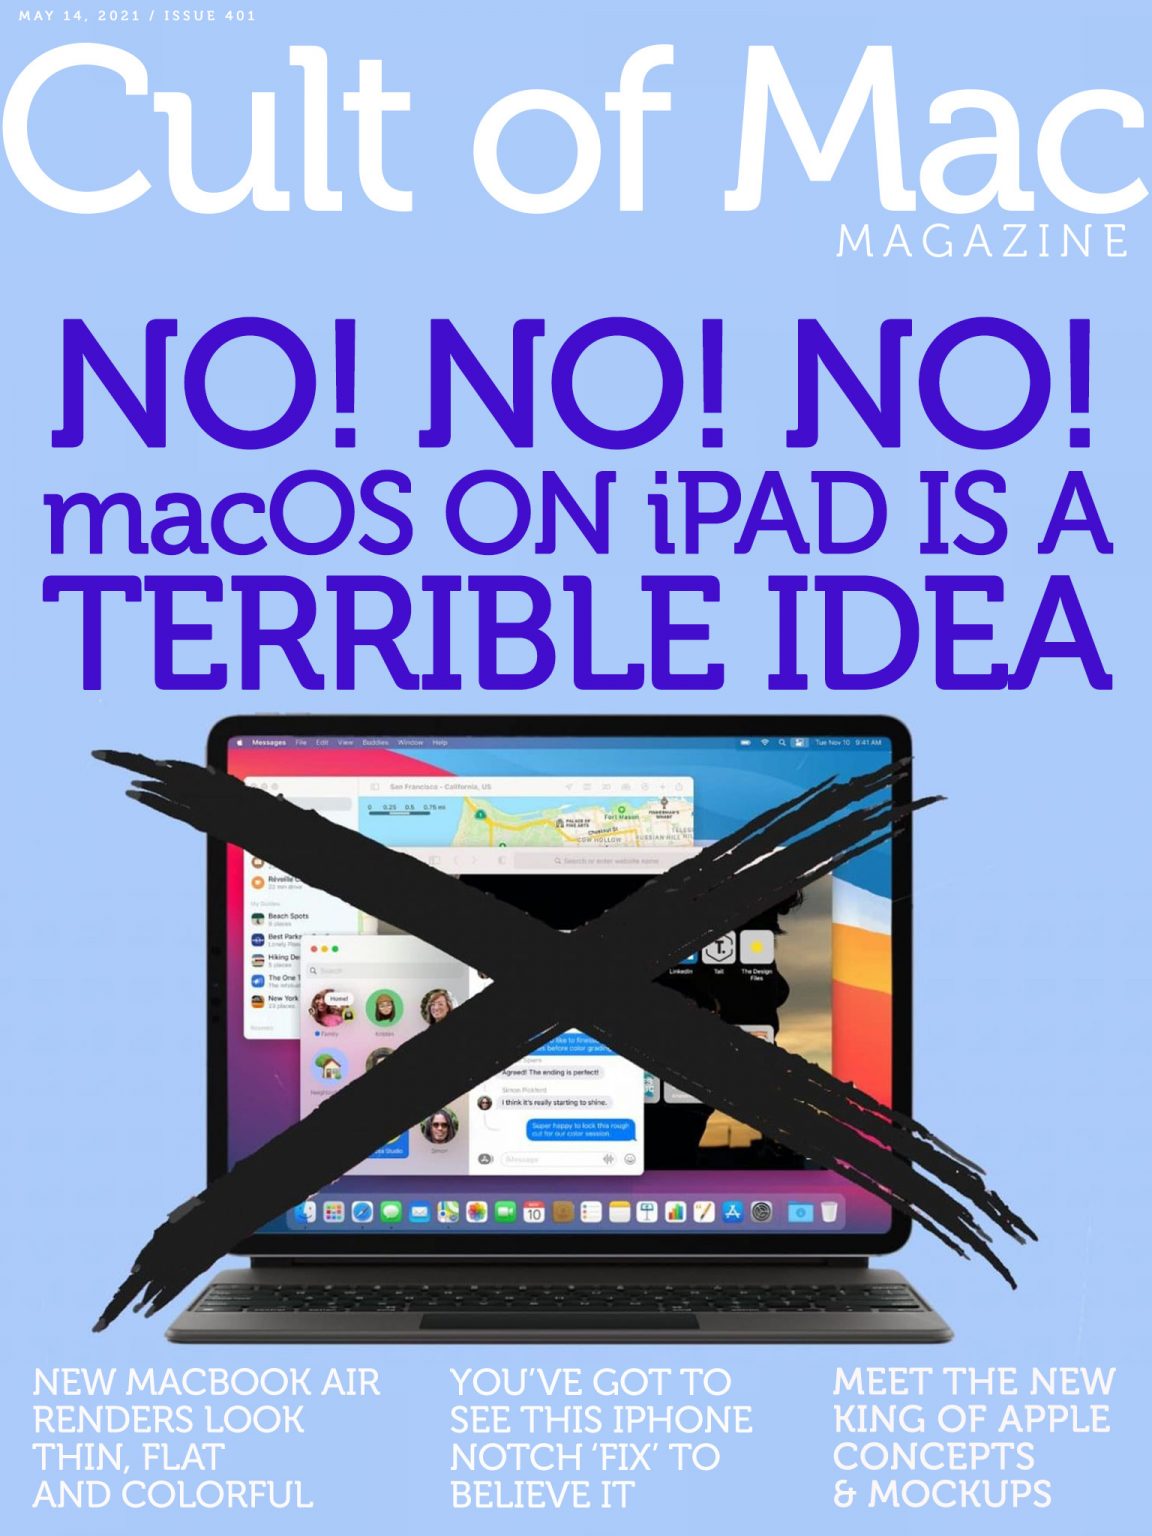 Porting macOS to iPad just doesn't make sense.